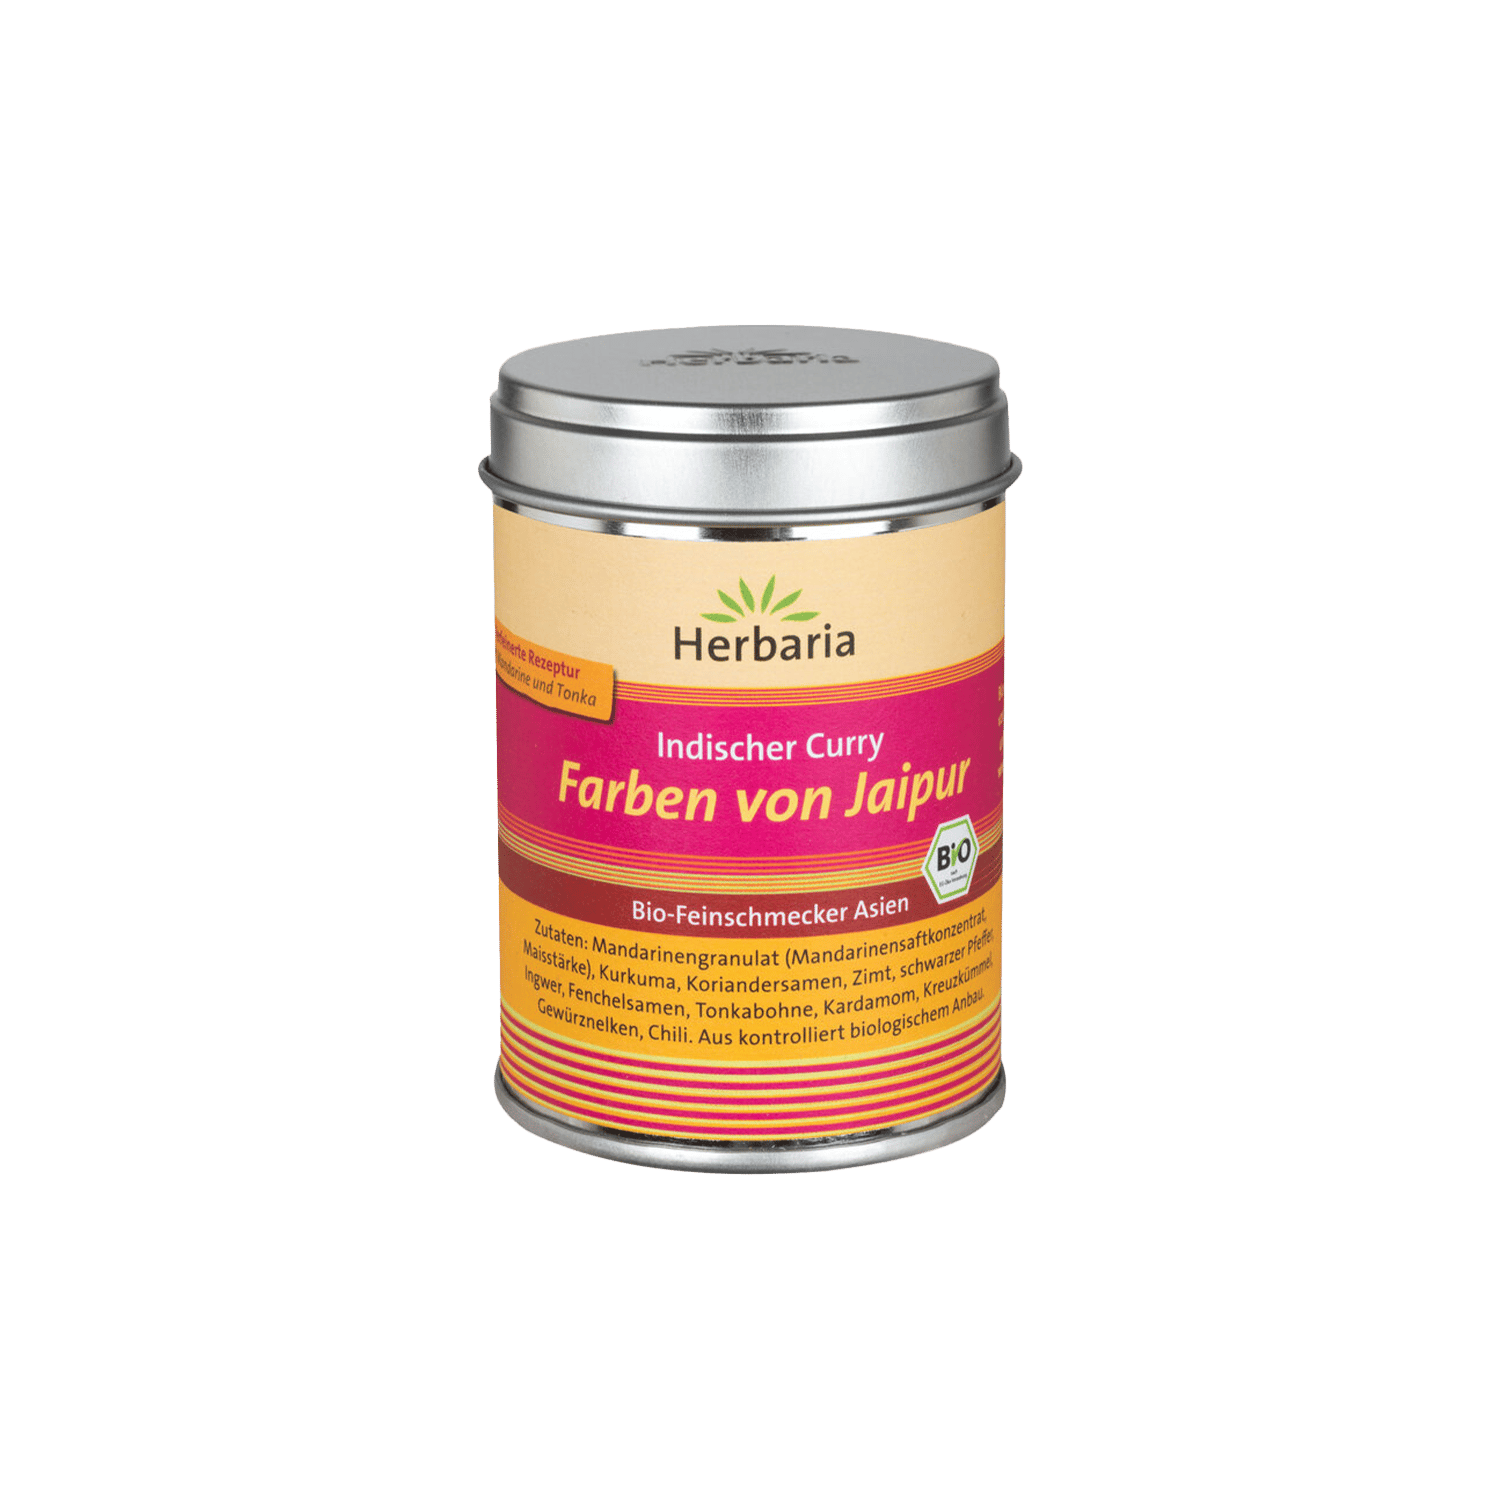 Gewürzmischung Indischer Curry Farben von Jaipur, BIO, 80g